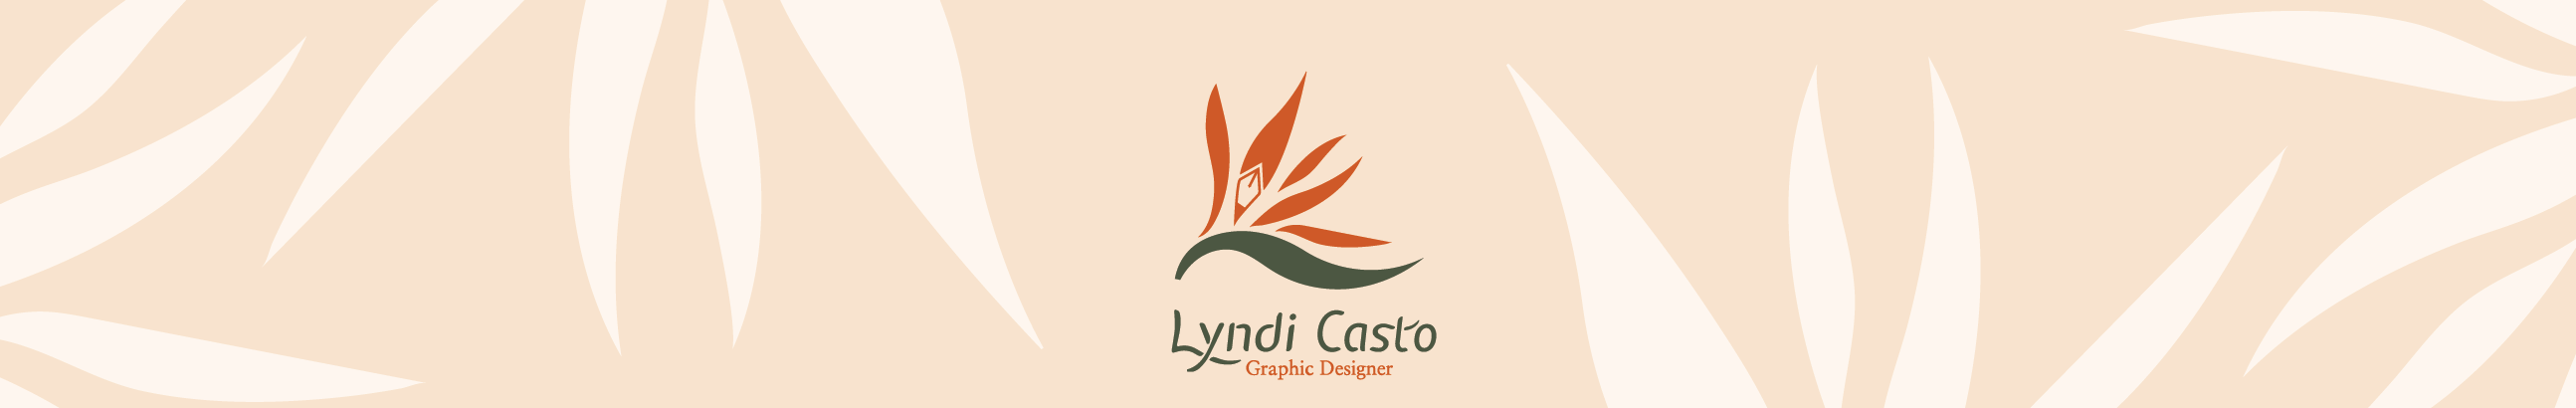 Profil-Banner von Lyndi Casto